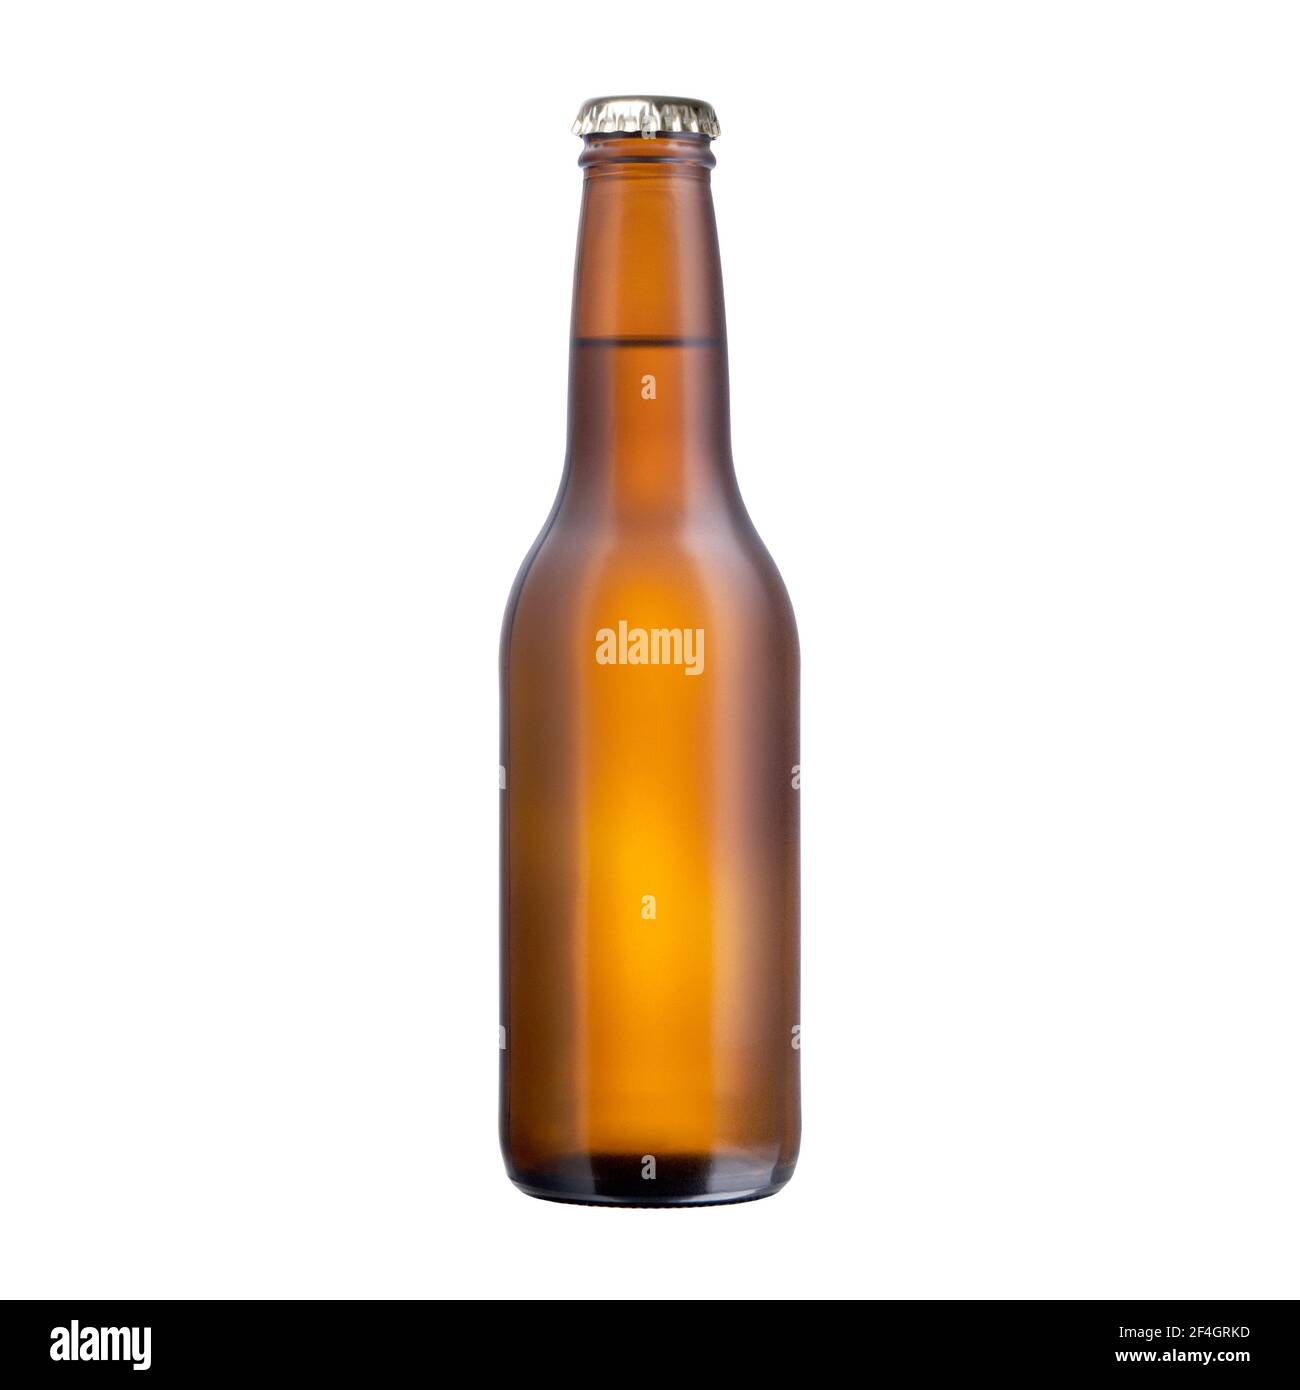 Braune Glasflasche voll Bier mit Kappe isoliert auf weißem Hintergrund, Vorderansicht abgefülltes Produkt ohne Etikett Ausschnitt Stockfoto